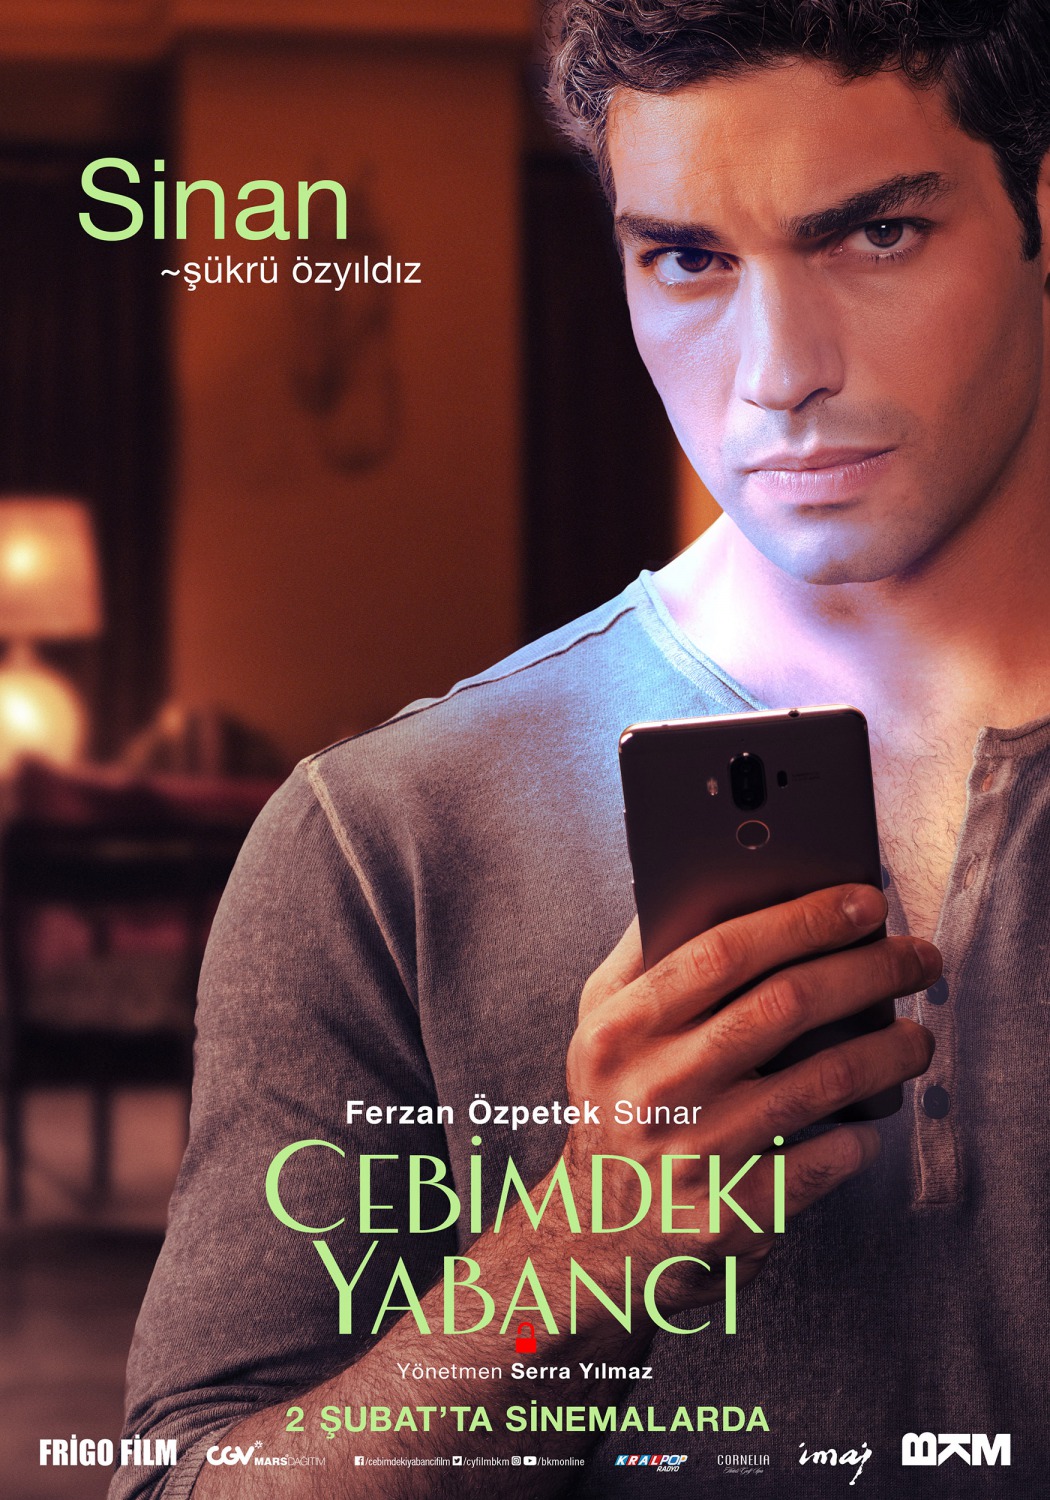 Extra Large Movie Poster Image for Cebimdeki Yabancı (#8 of 10)